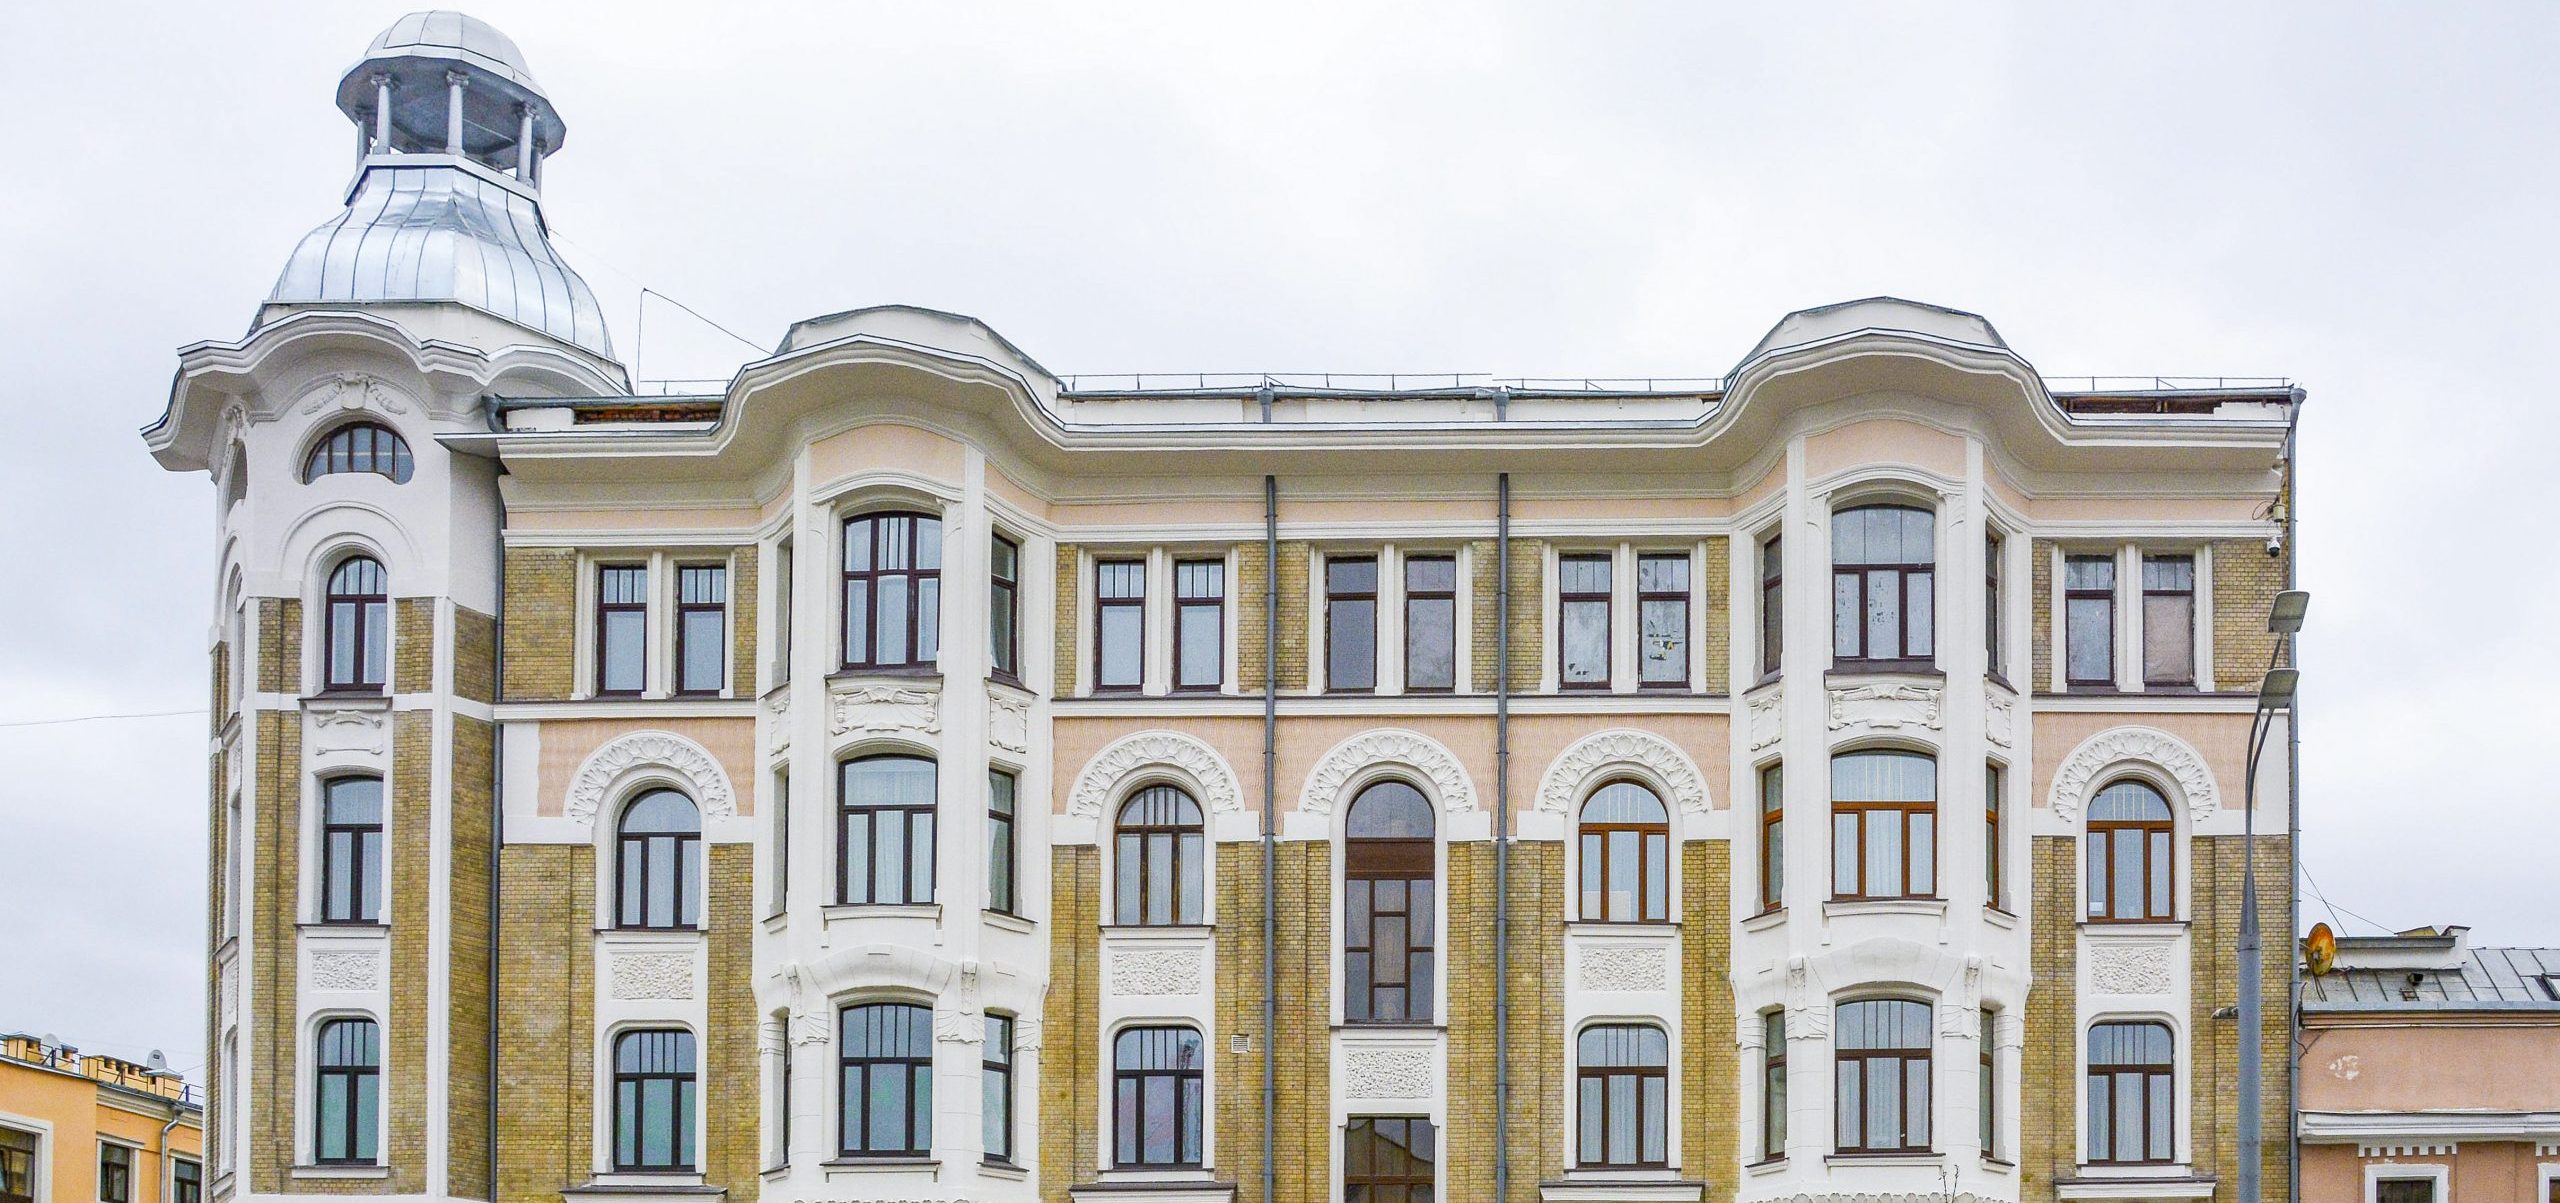 Ремонт исторического здания на улице Спиридоновка почти завершили. Фото предоставили в пресс-службе Комплекса городского хозяйства Москвы